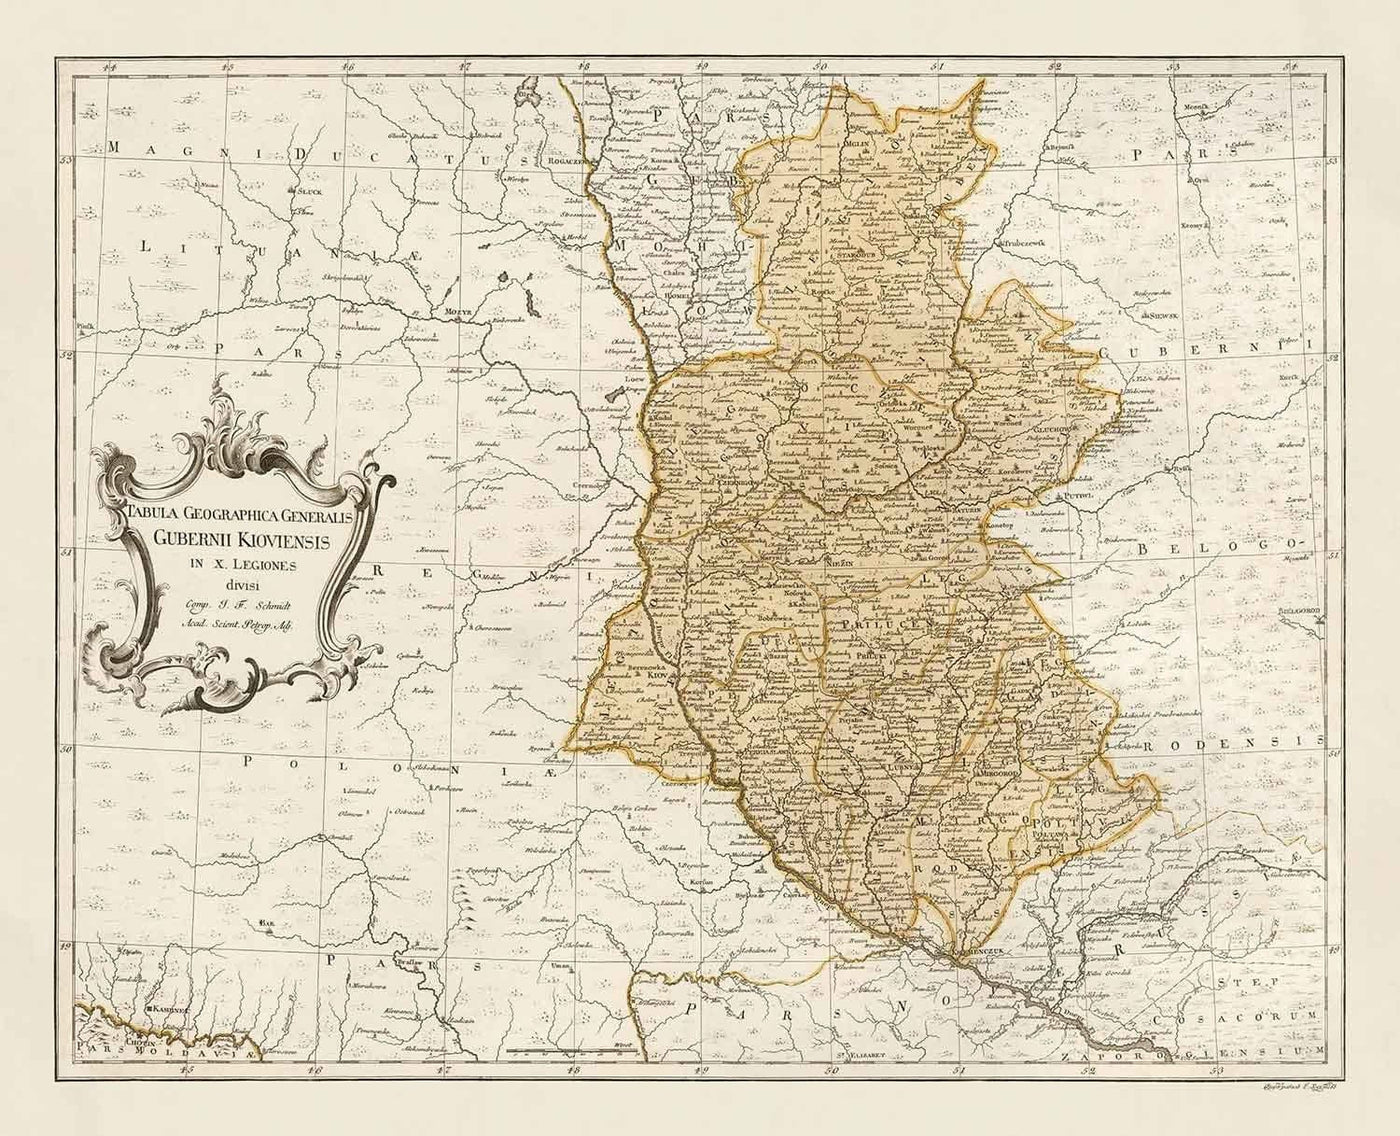 Old Map of Ukraine, 1770 - Kiev Governate, Empire russe - Kremenchuk, Poltava, Cherkasy, Chernihiv, Cities, War